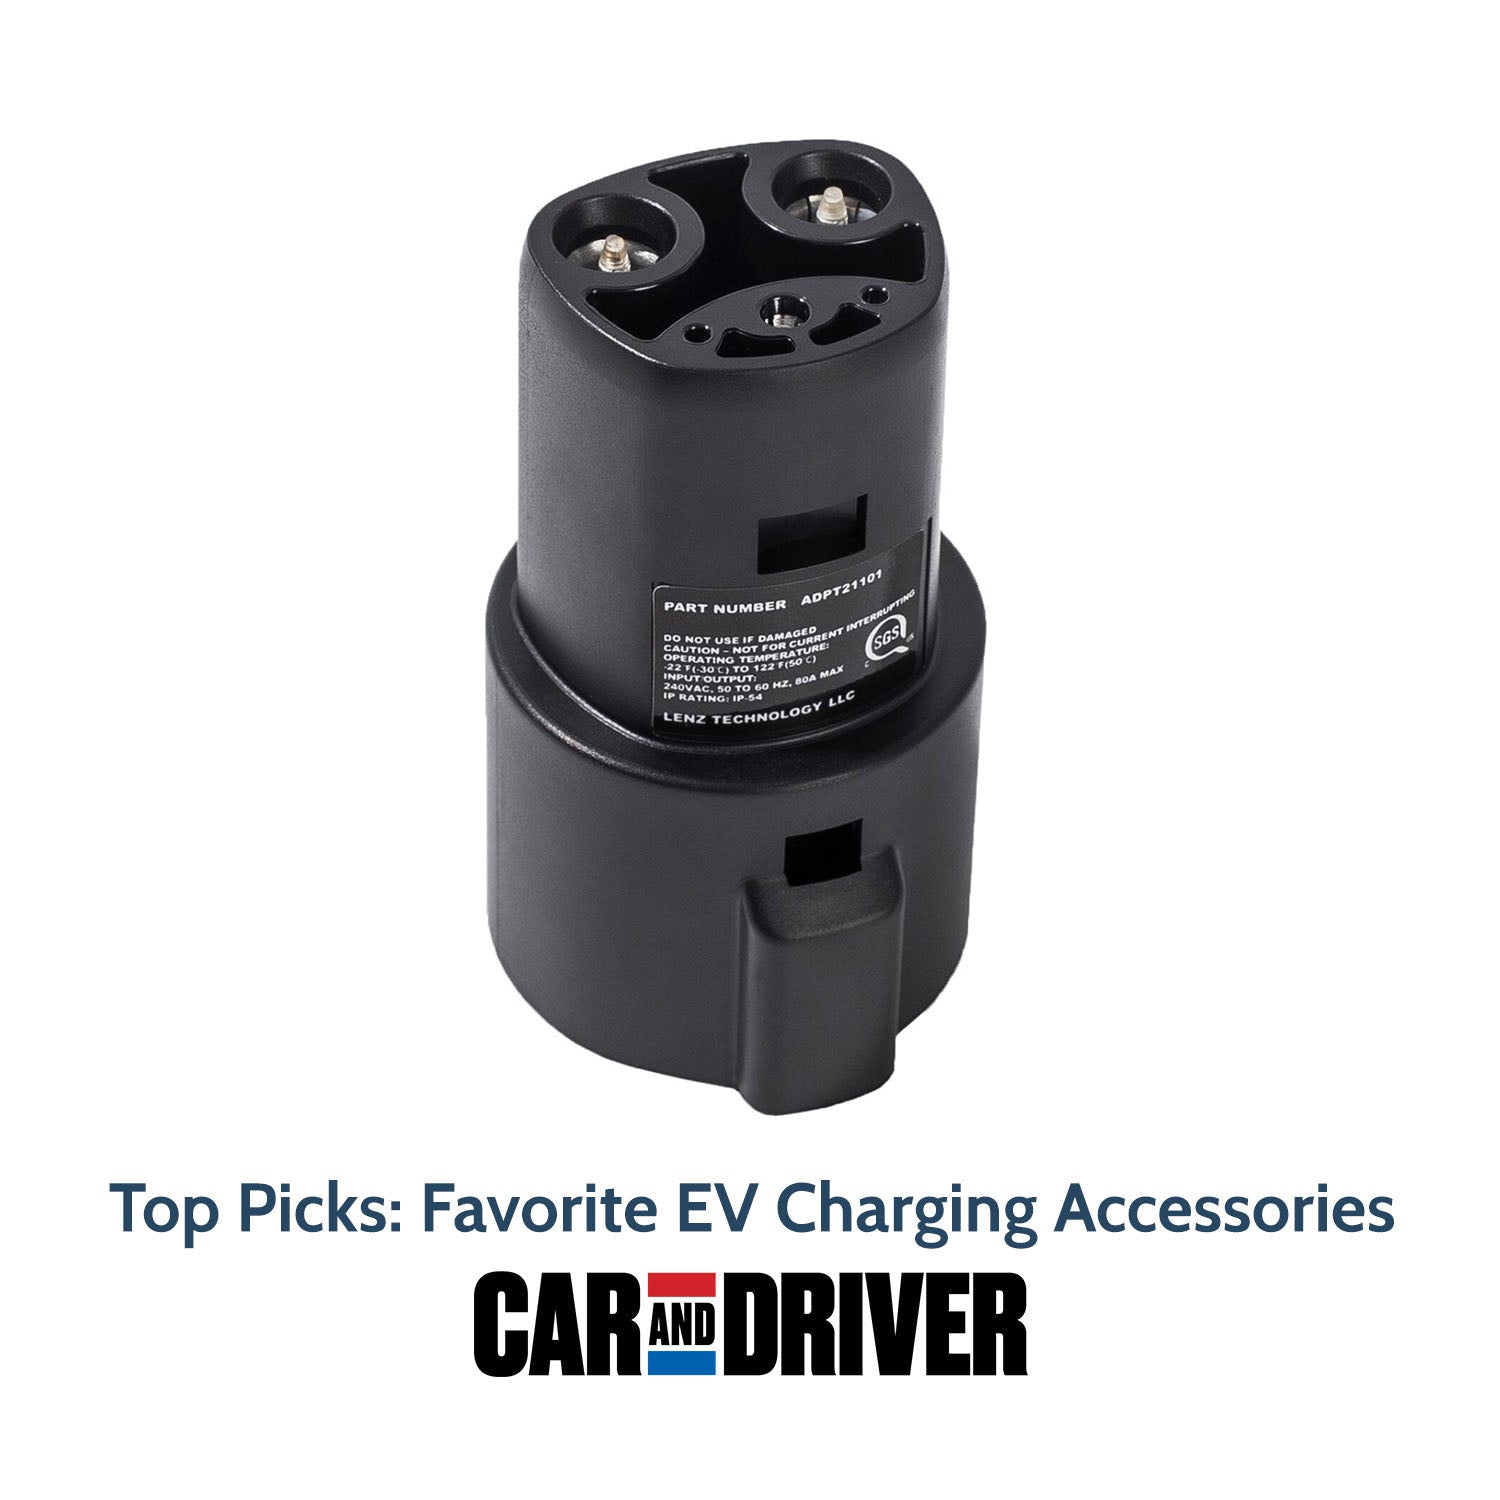 FWHW EV Charging Adapter for (Tesla) (Type1) (Type2) (GBT) – Ev